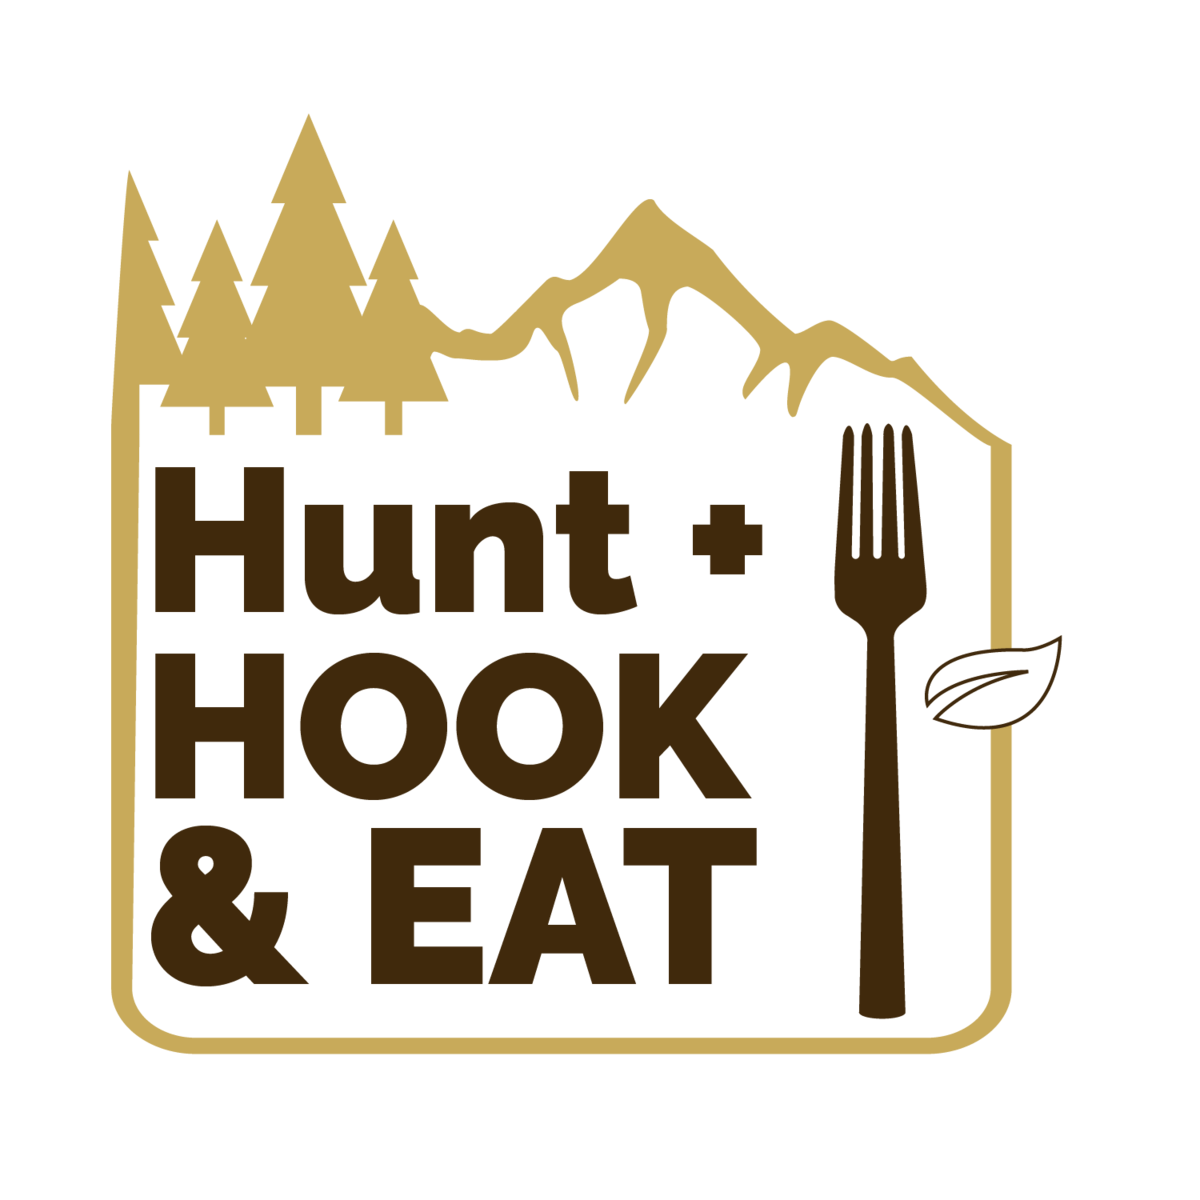 Hunt Hook Eat logo